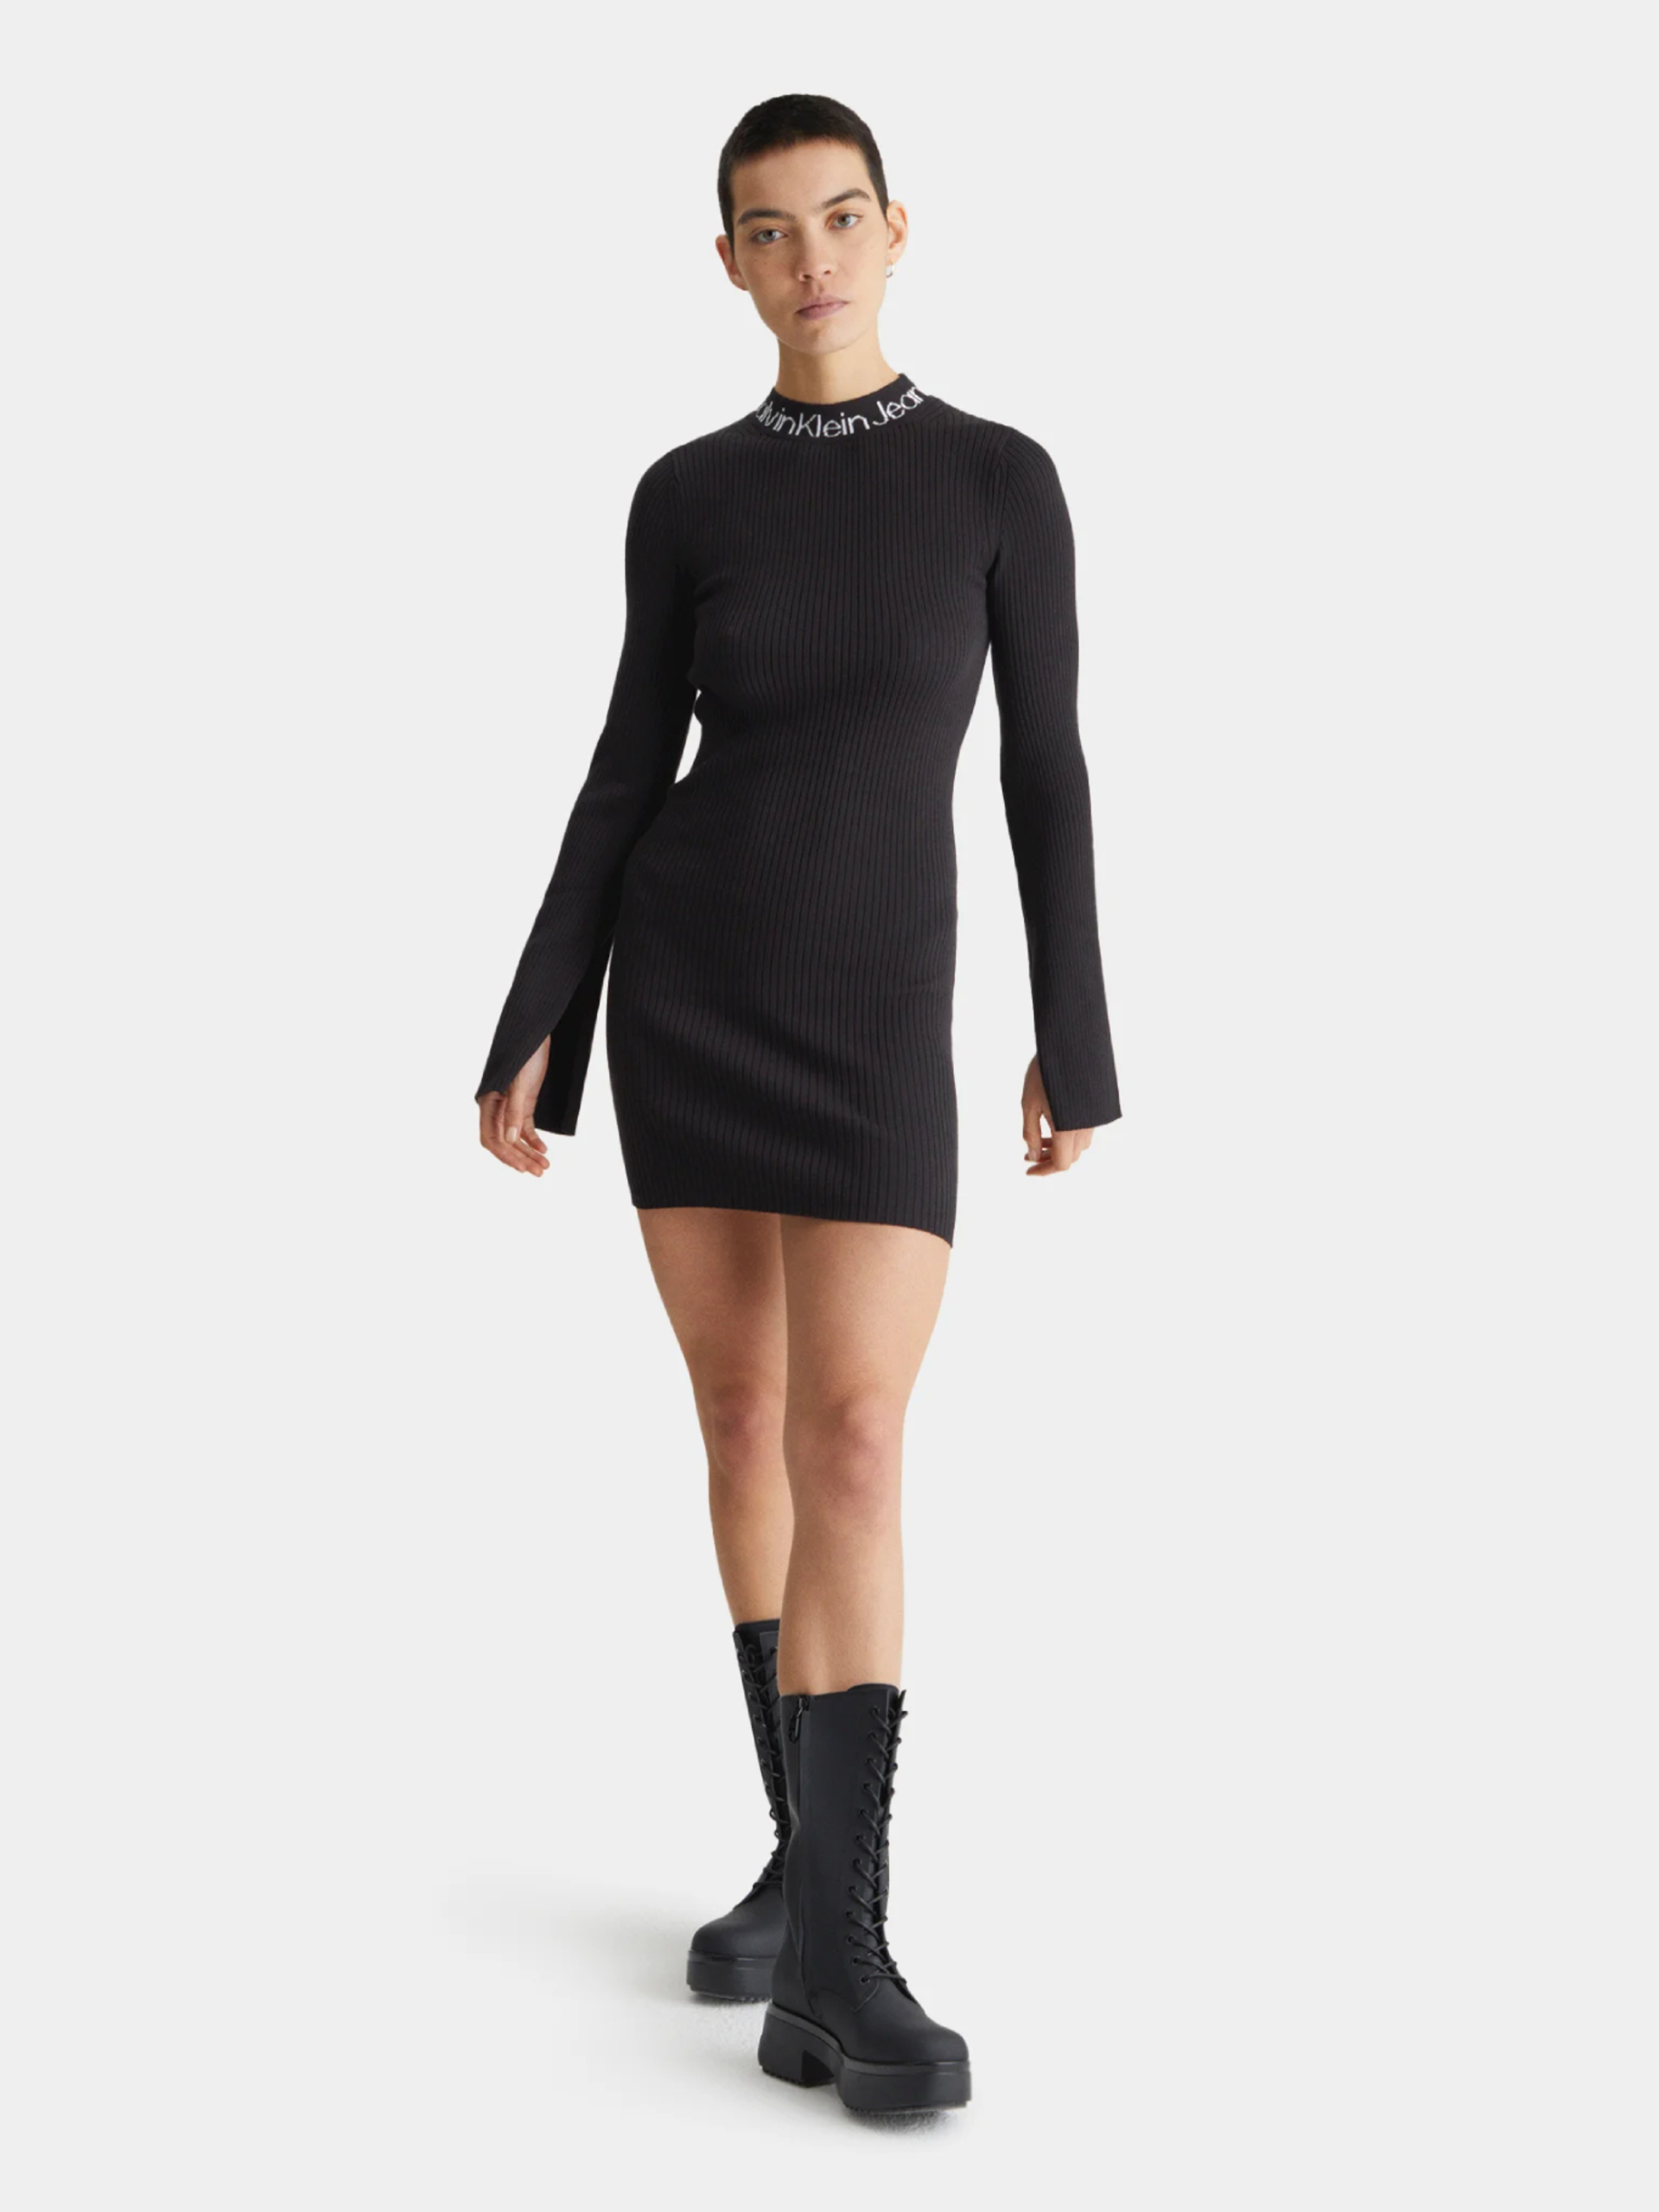 Calvin Klein dámské černé úpletové šaty - M (BEH)